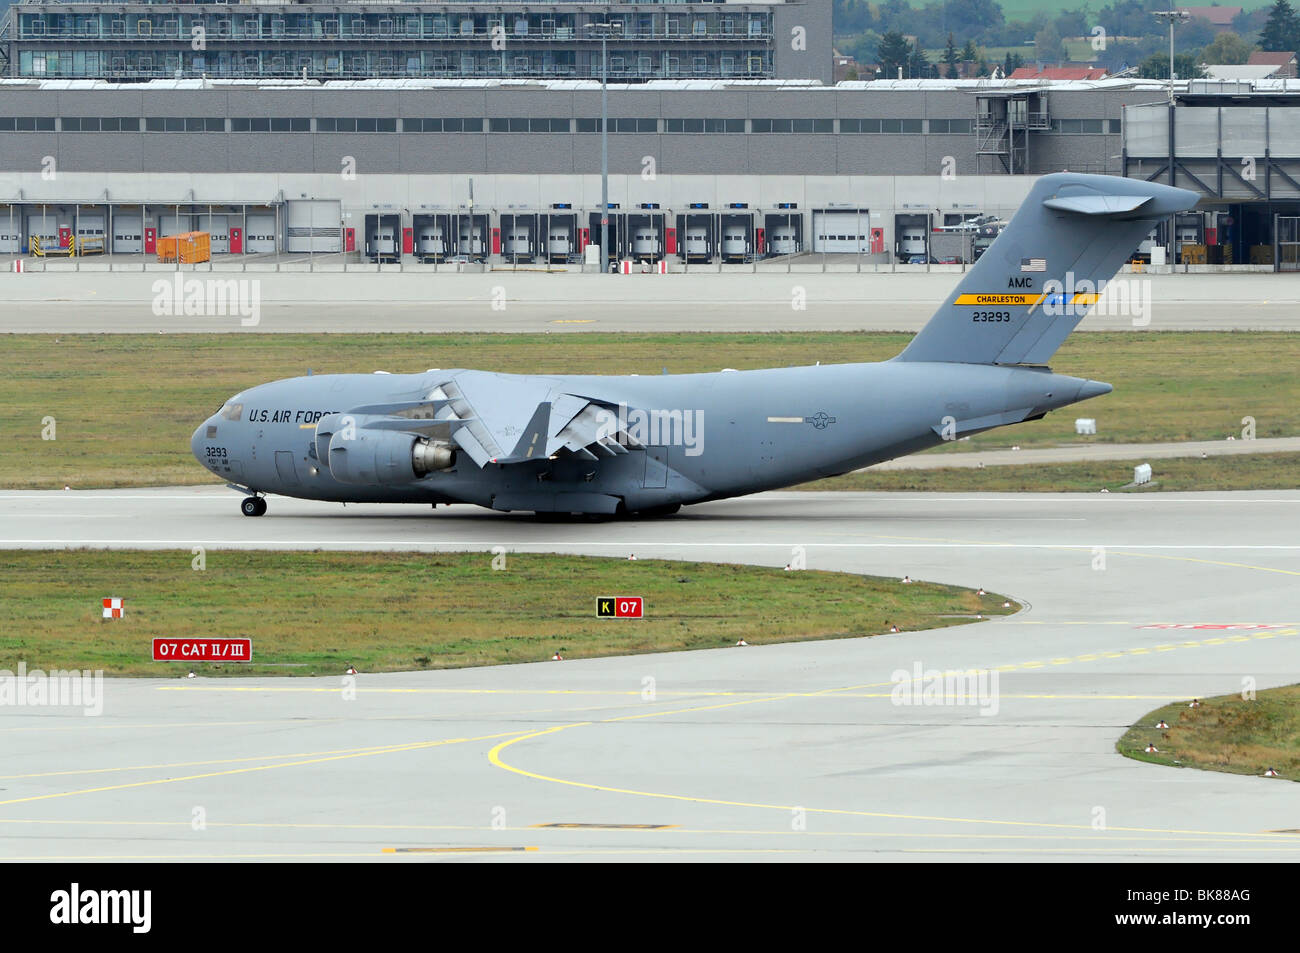 3293 de l'US AIR FORCE, Boeing C-17A Globemaster III pendant le décollage, l'aéroport de Stuttgart, Bade-Wurtemberg, Allemagne, Europe Banque D'Images